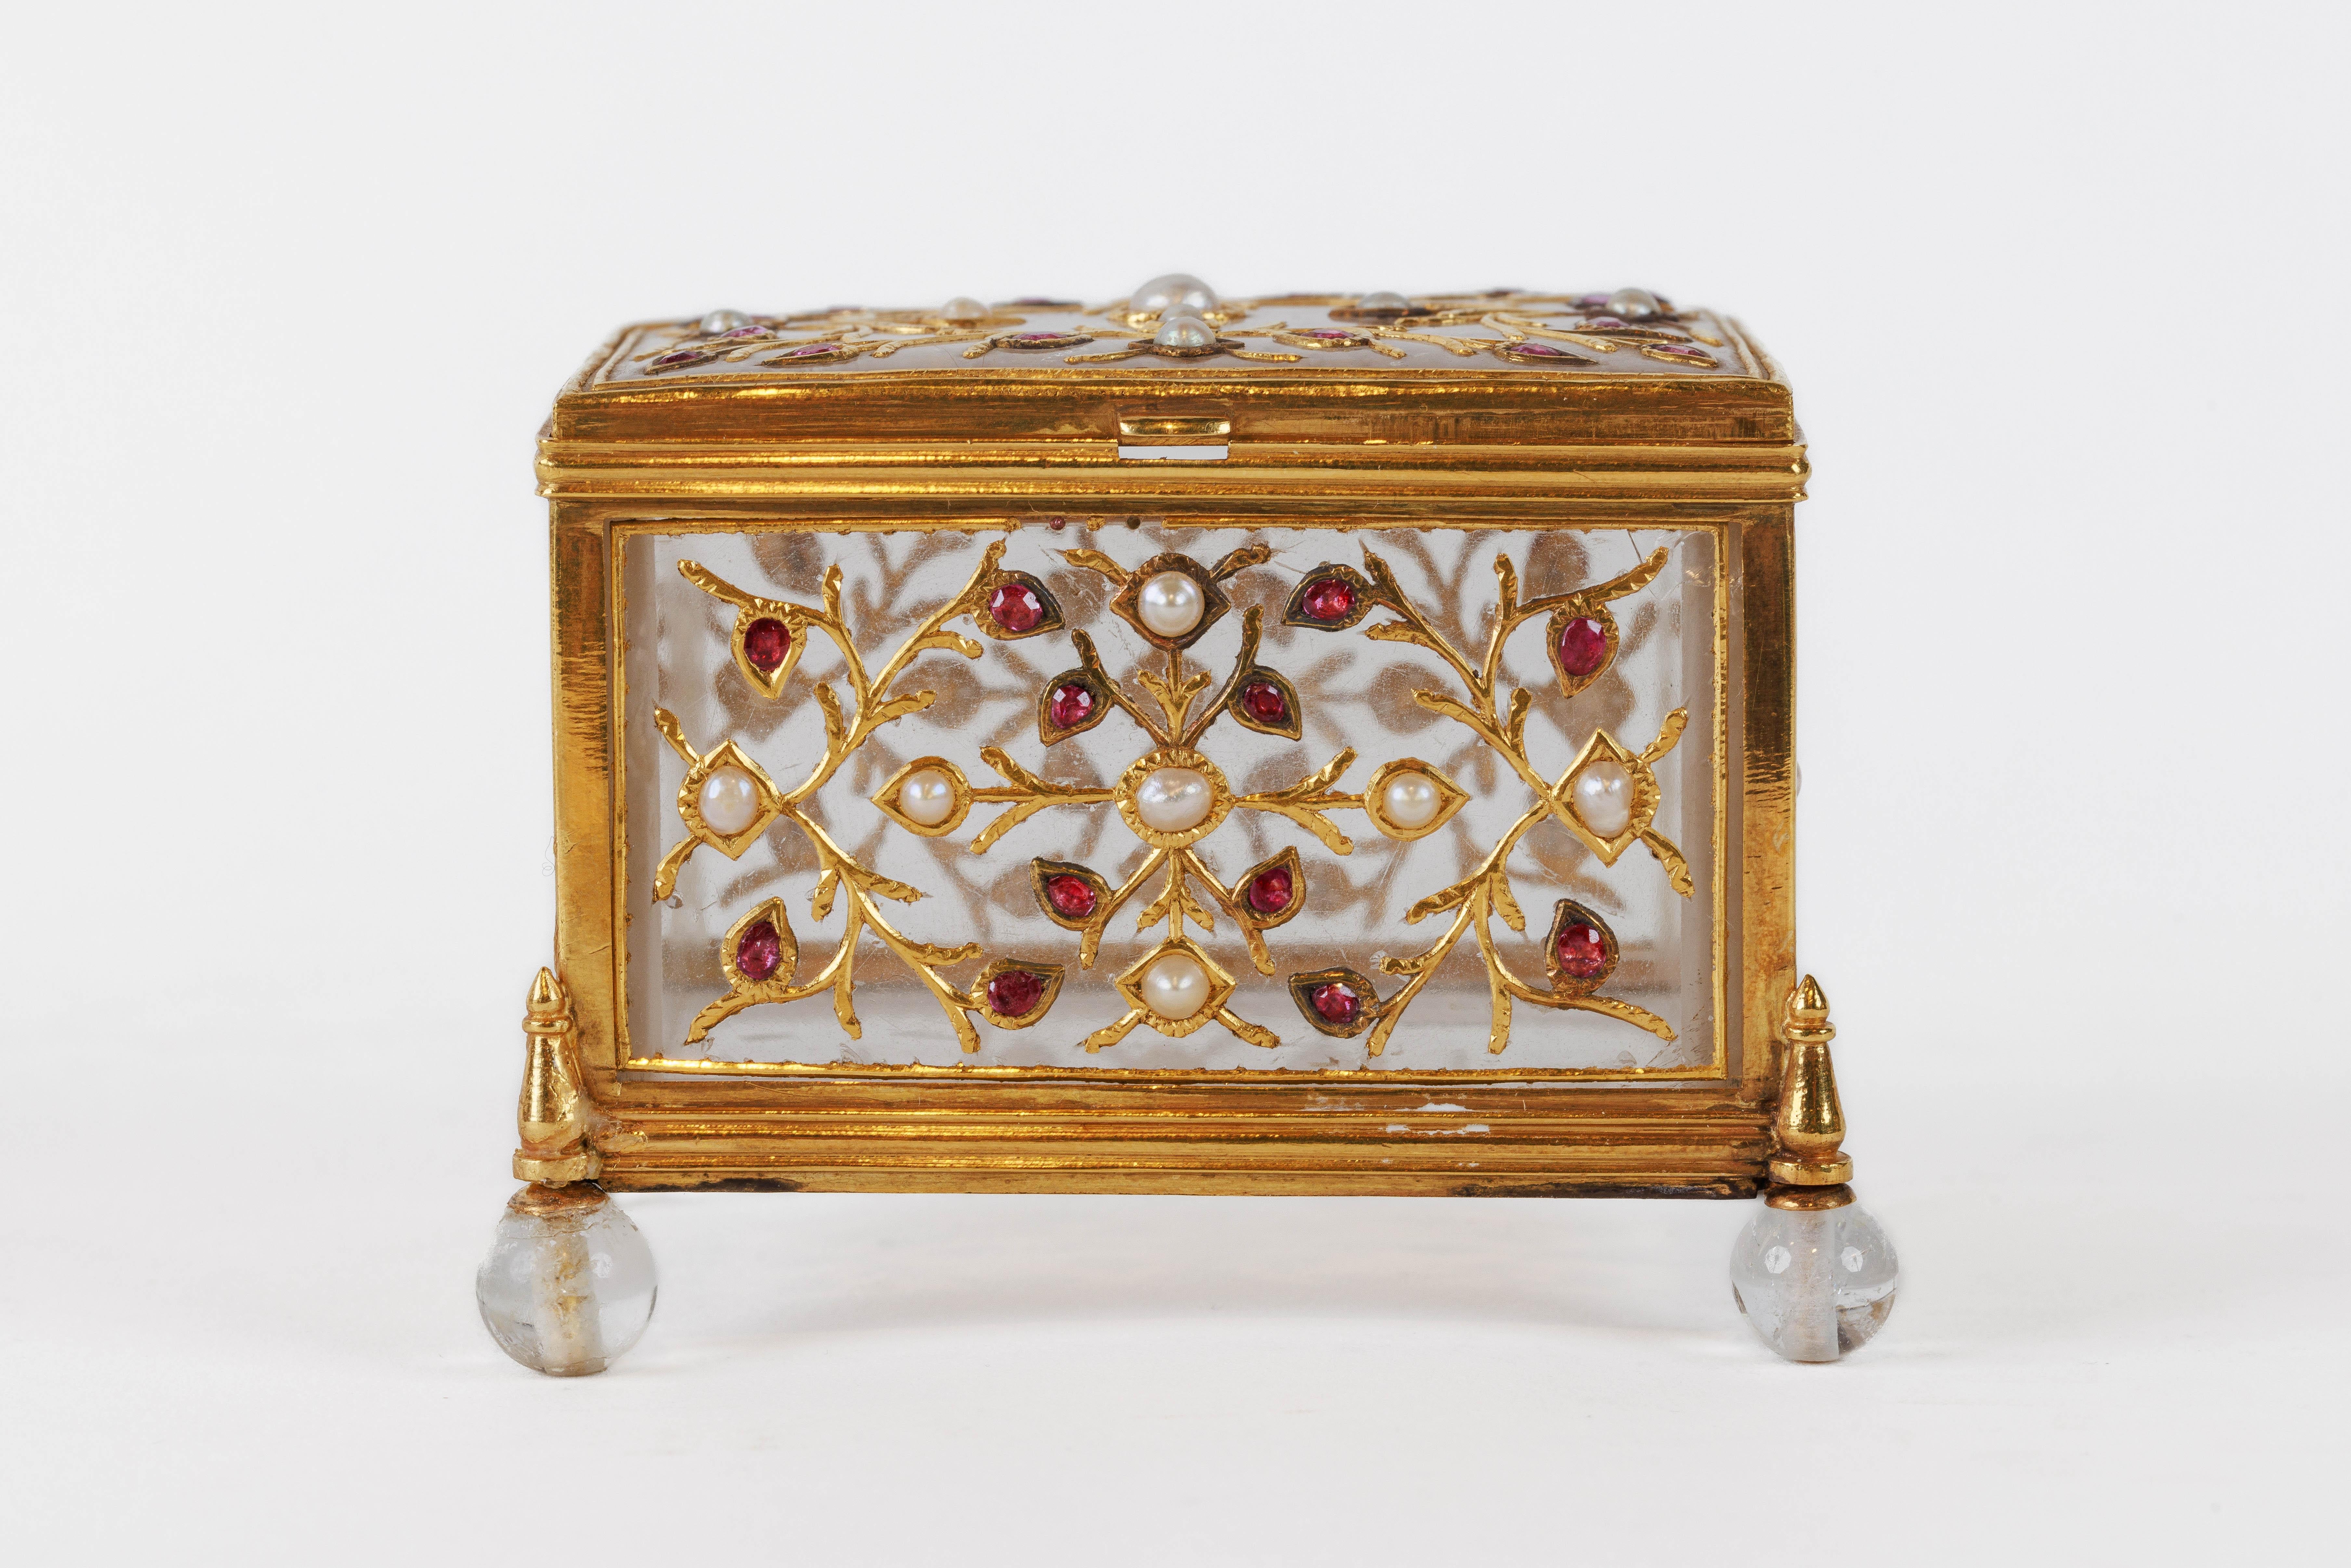 Boîte moghole en cristal de roche et or, fine et exquise, Inde, XVIIIe siècle.

Finley en or 22k, monté avec des rubis et des perles. Le corps est taillé dans une seule pièce de cristal de roche, serti de rubis et de perles dans des montures en or